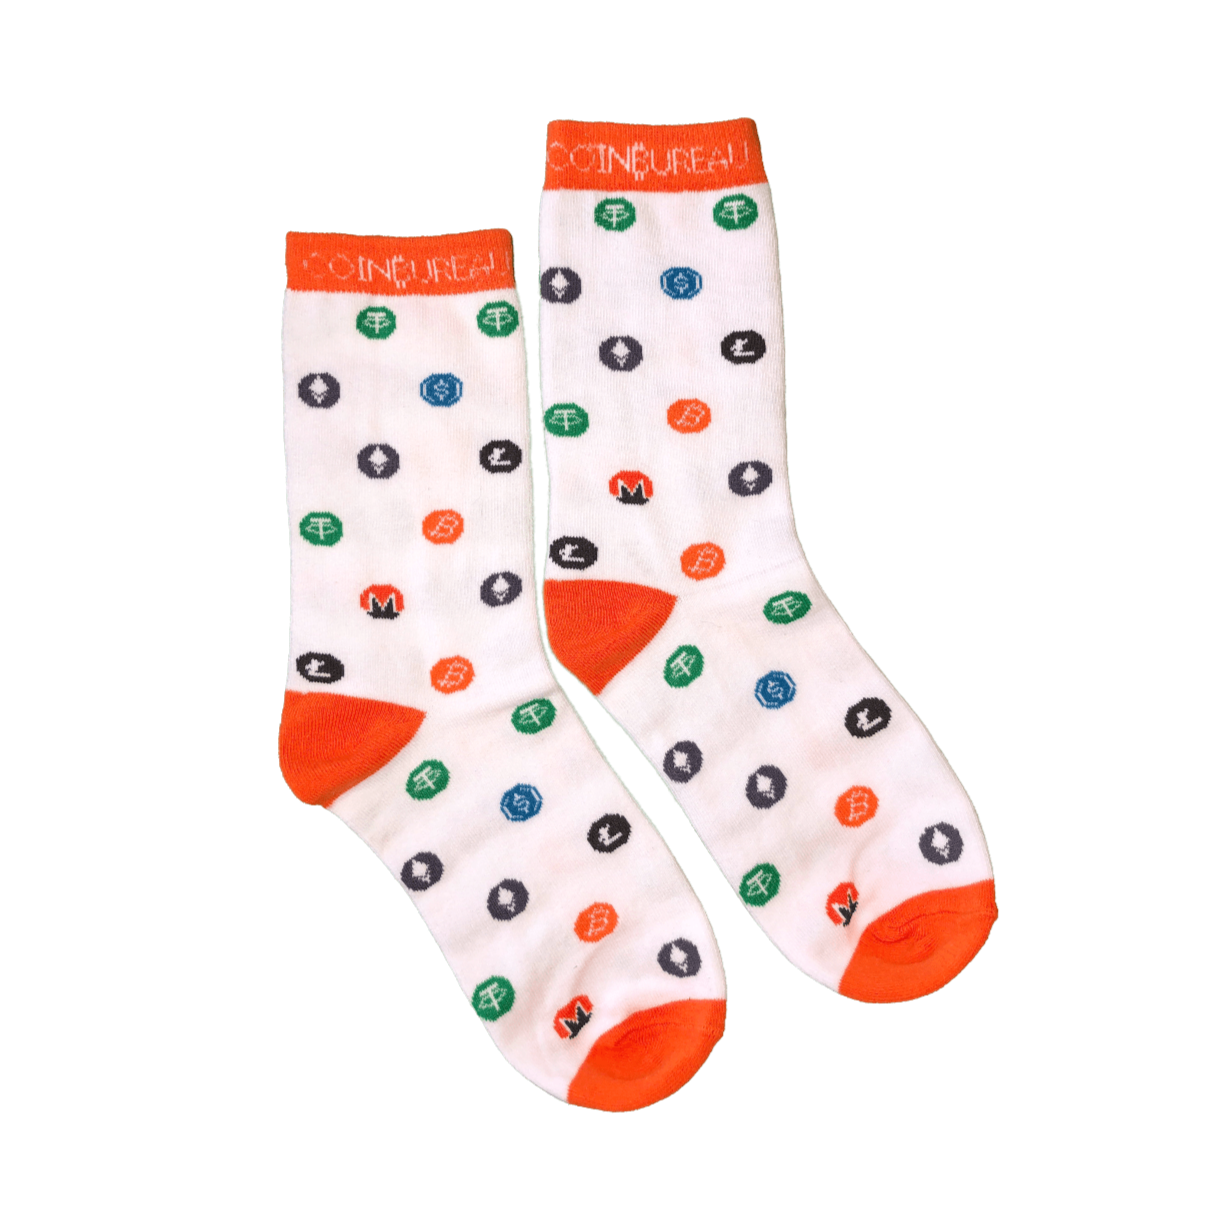 Crypto Socks (4 pairs)